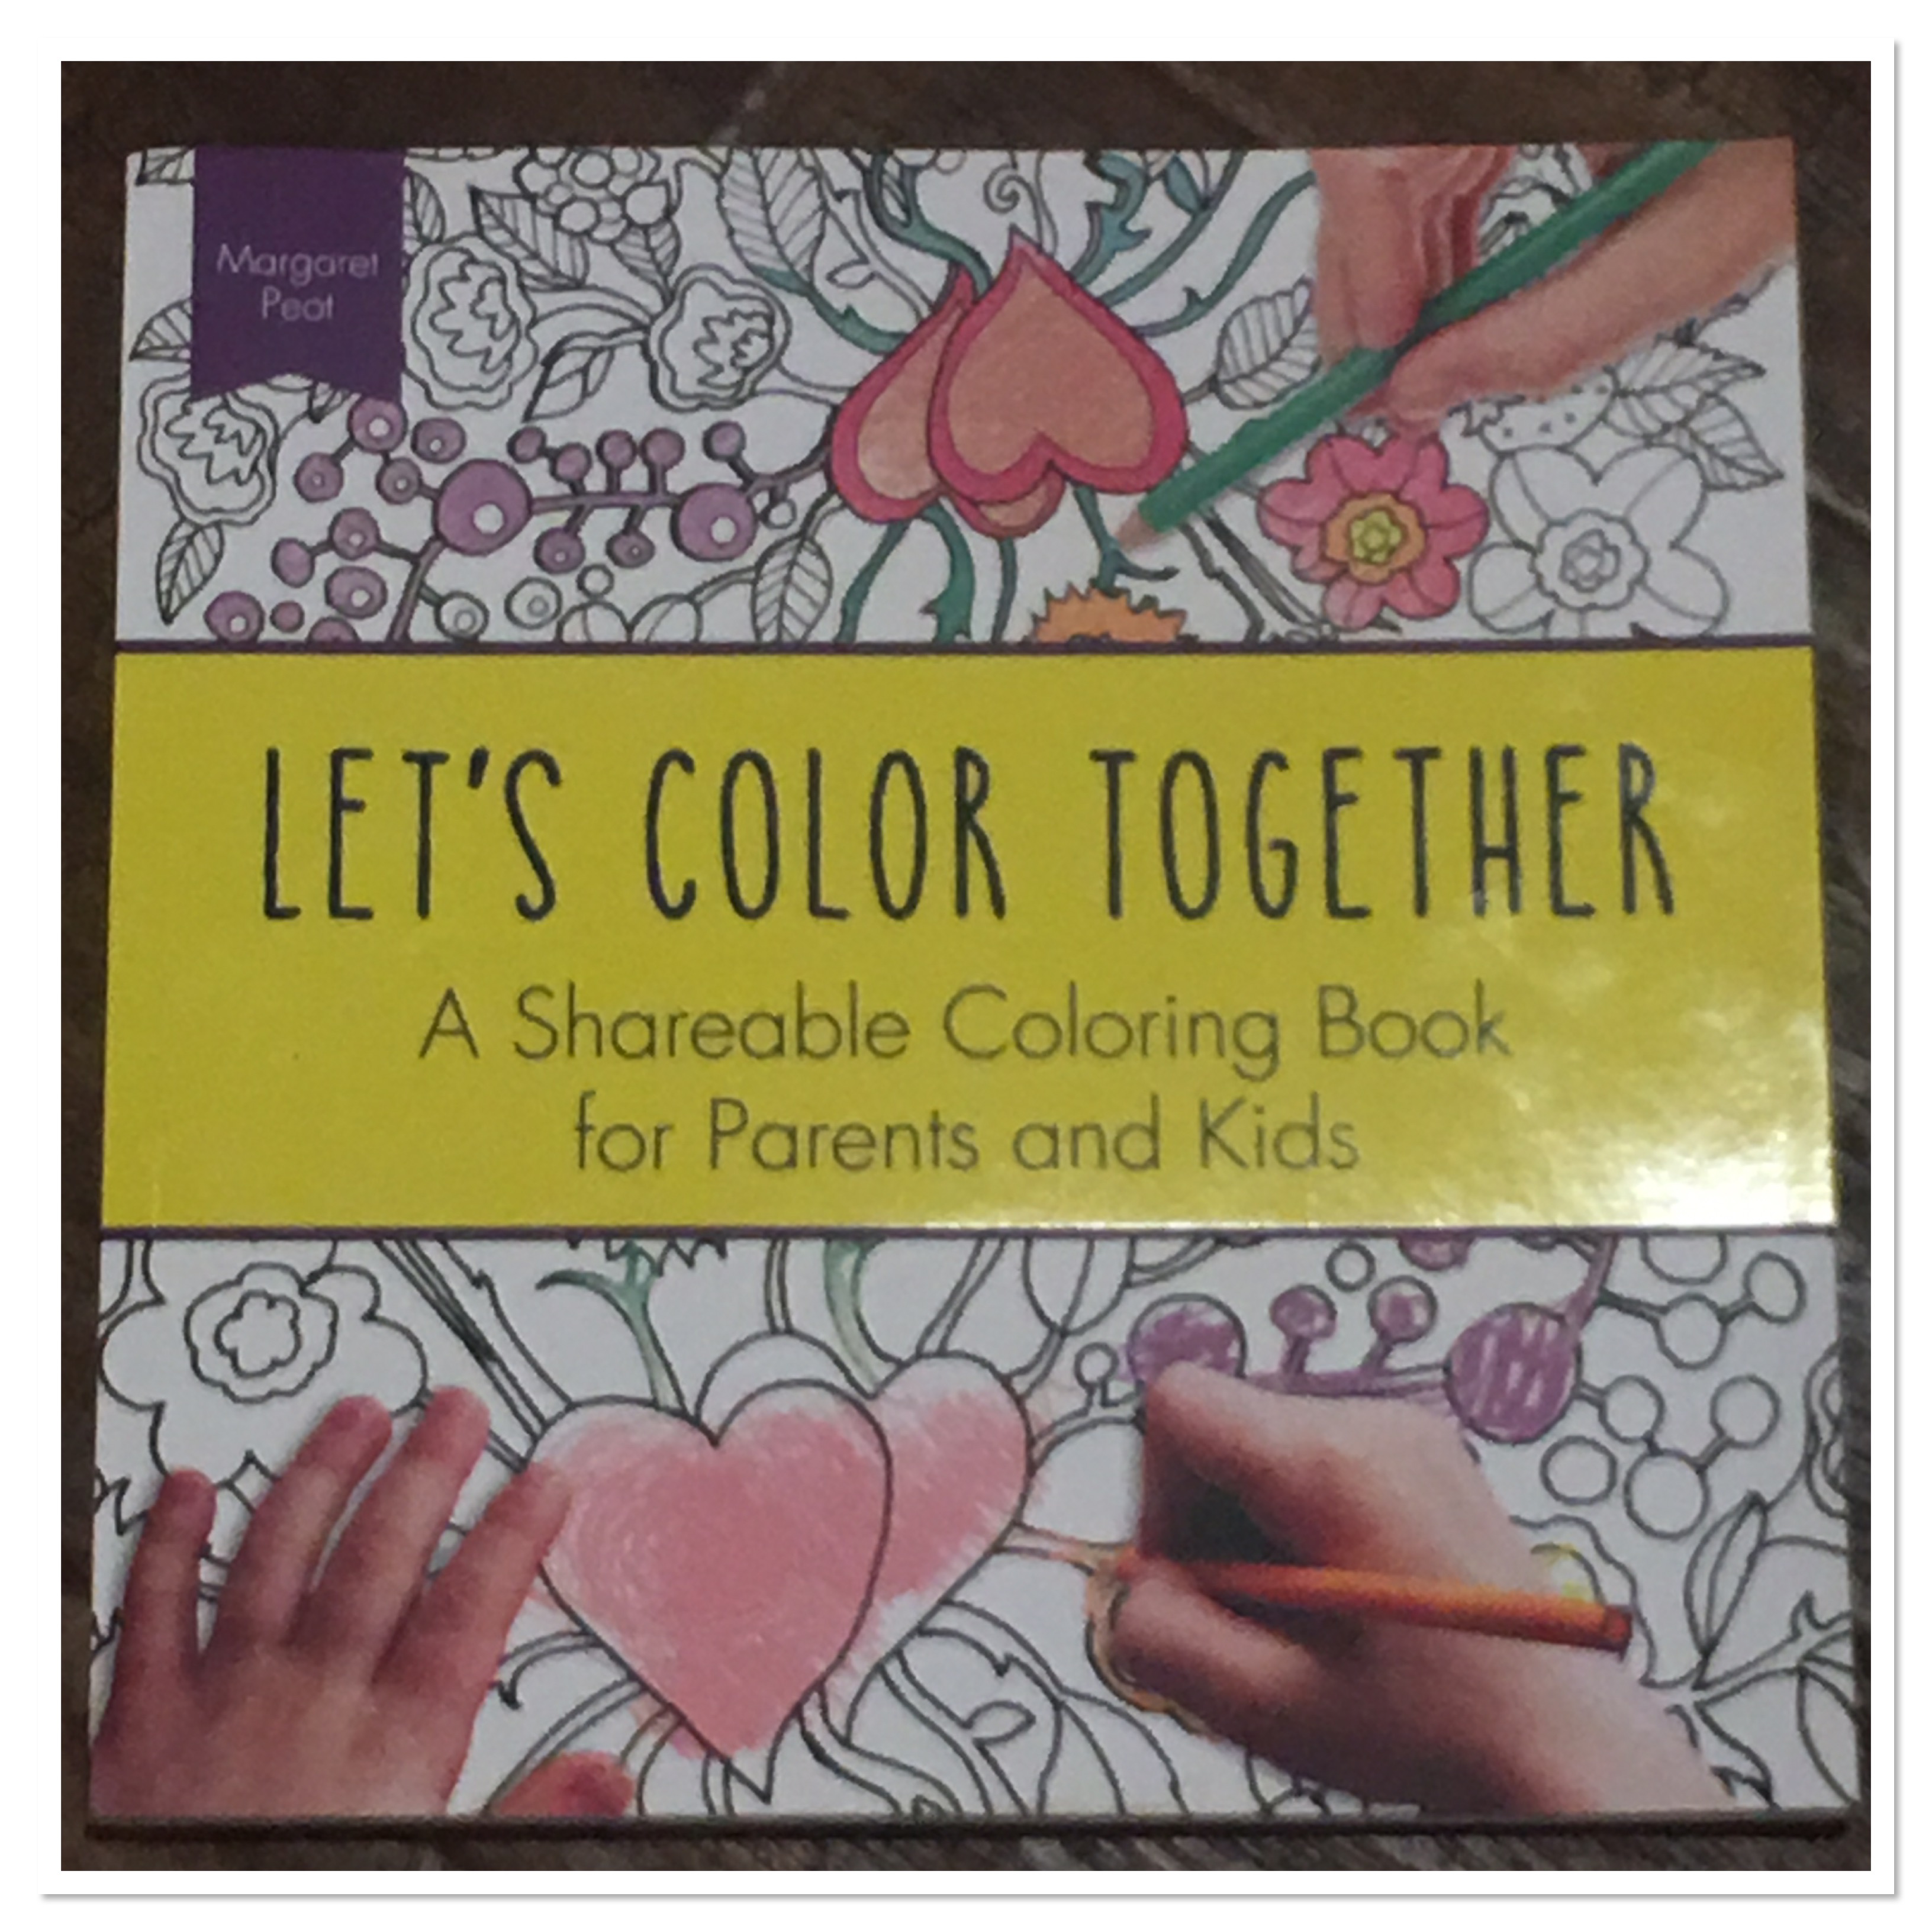 Let's Color Together published by Sourebook